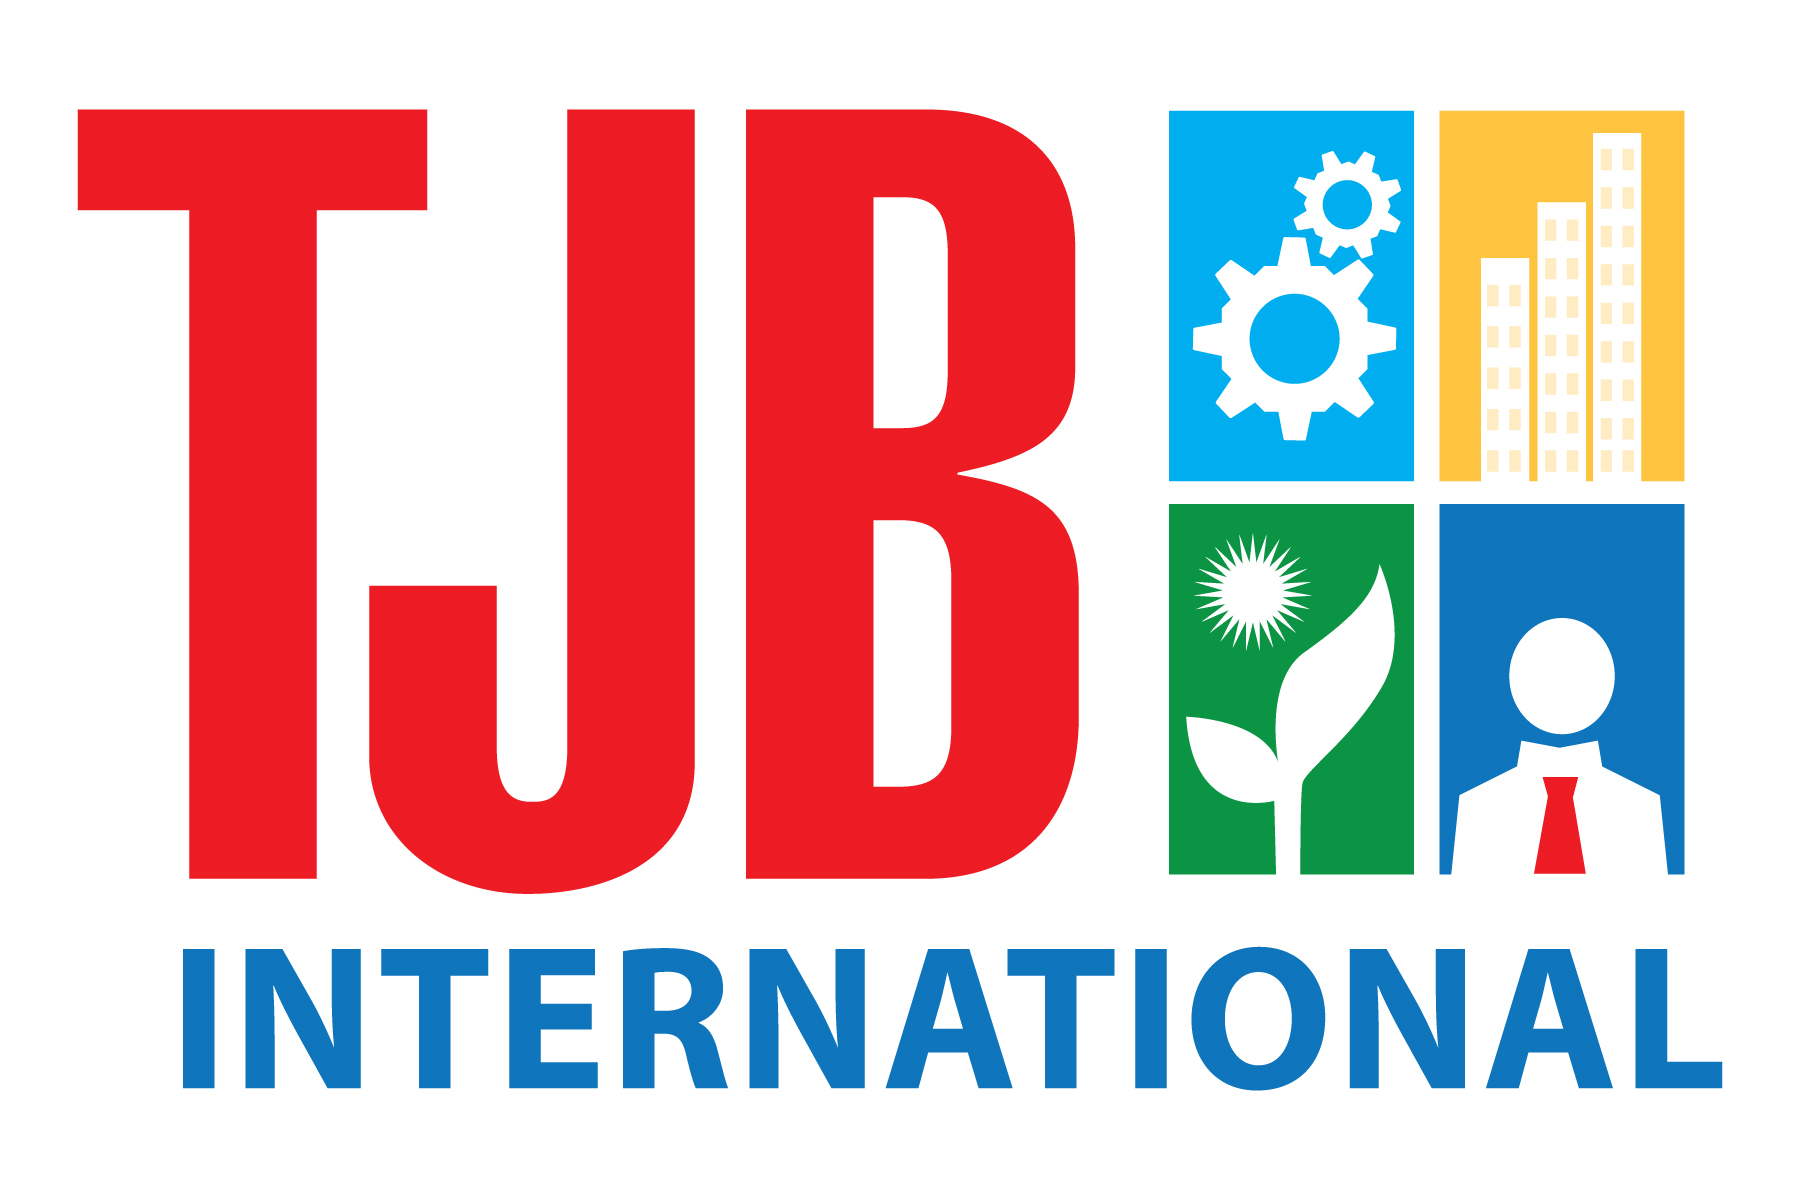 TJB International